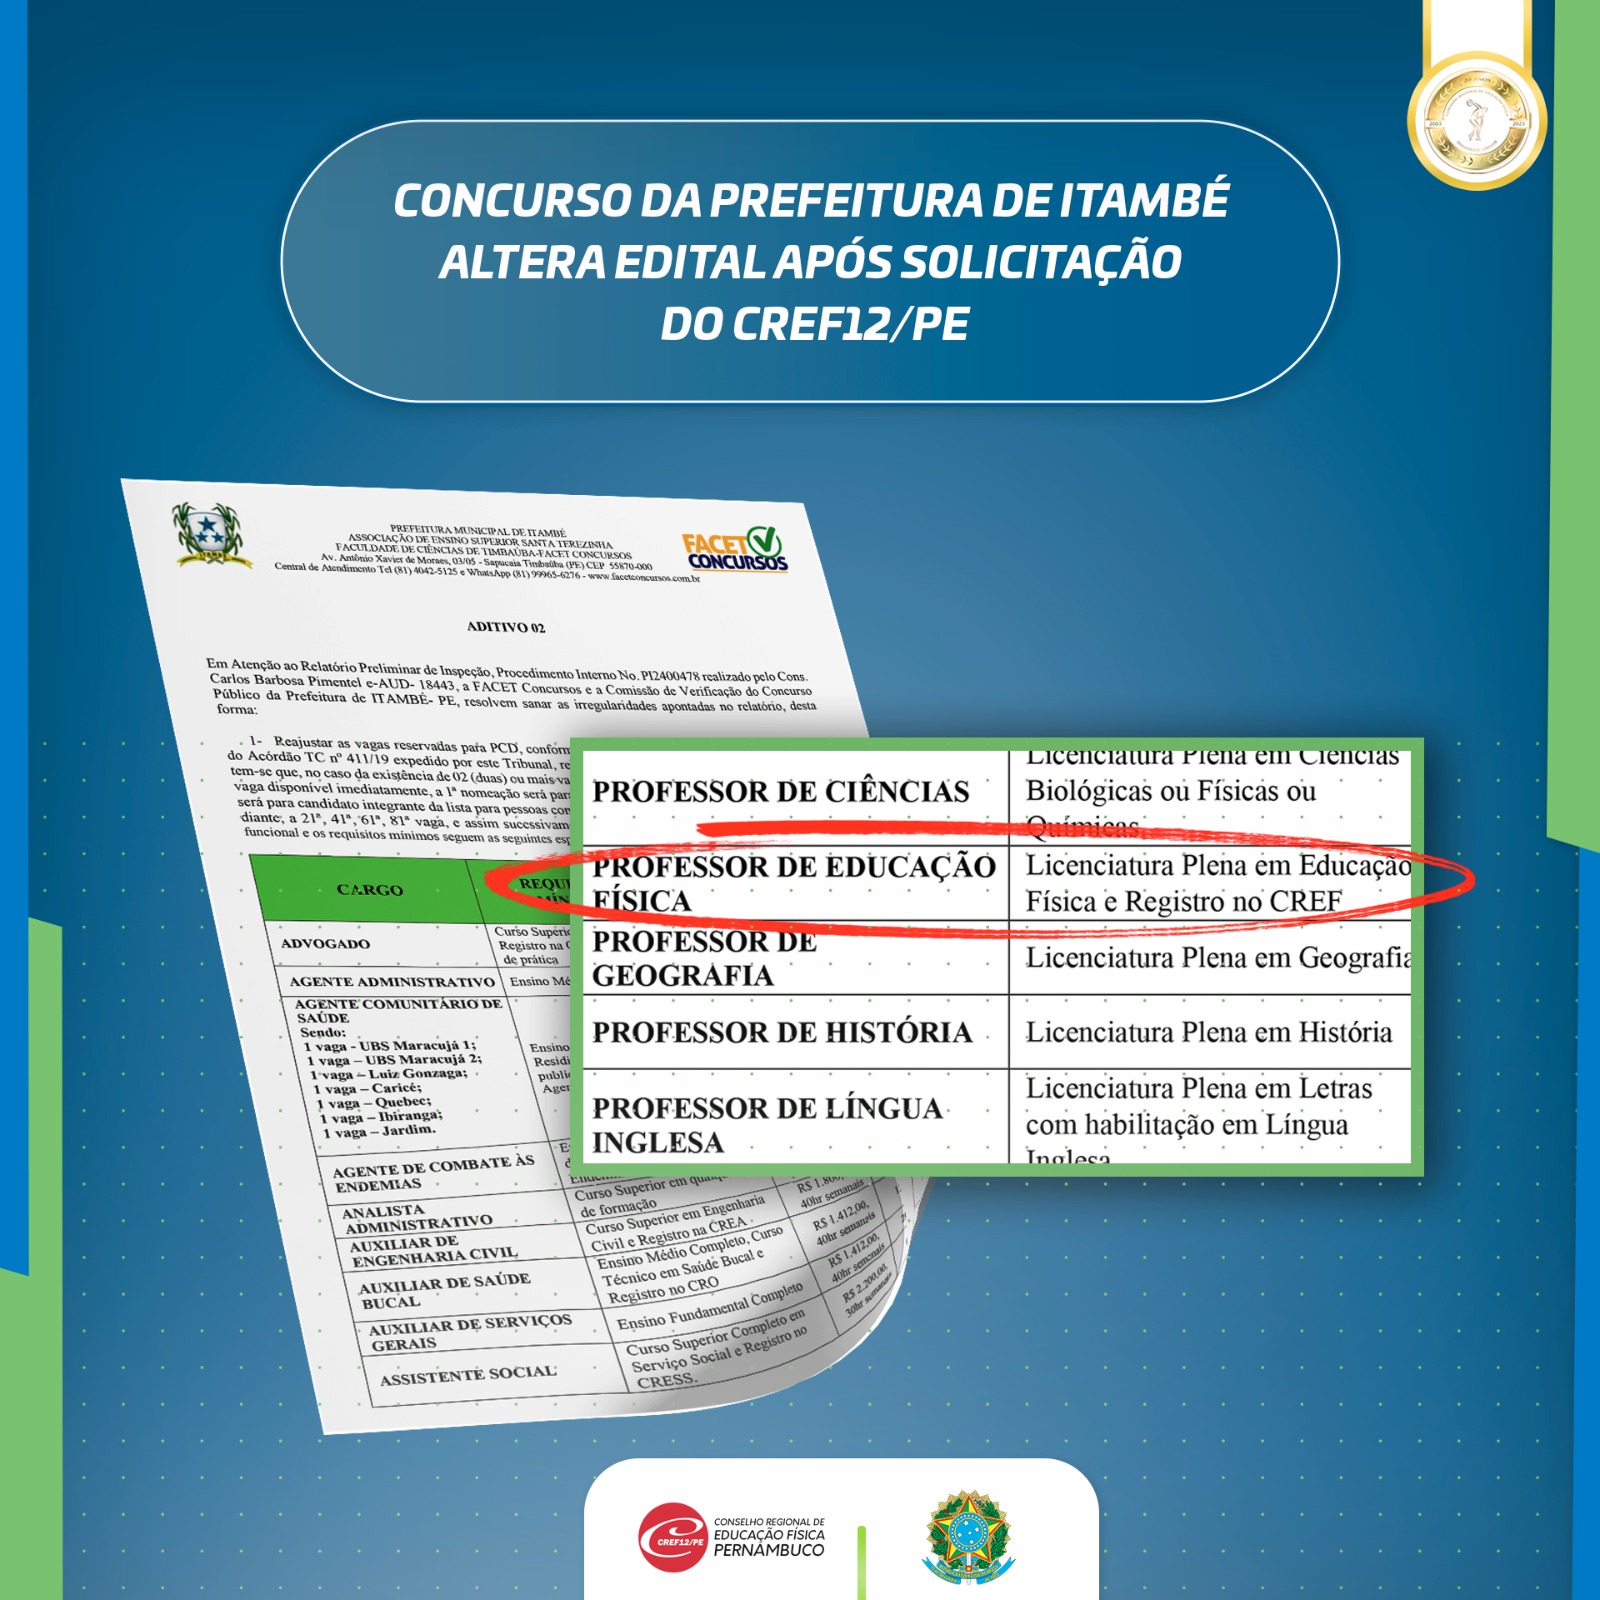 Você está visualizando atualmente Concurso da Prefeitura de Itambé altera edital após solicitação do CREF12/PE